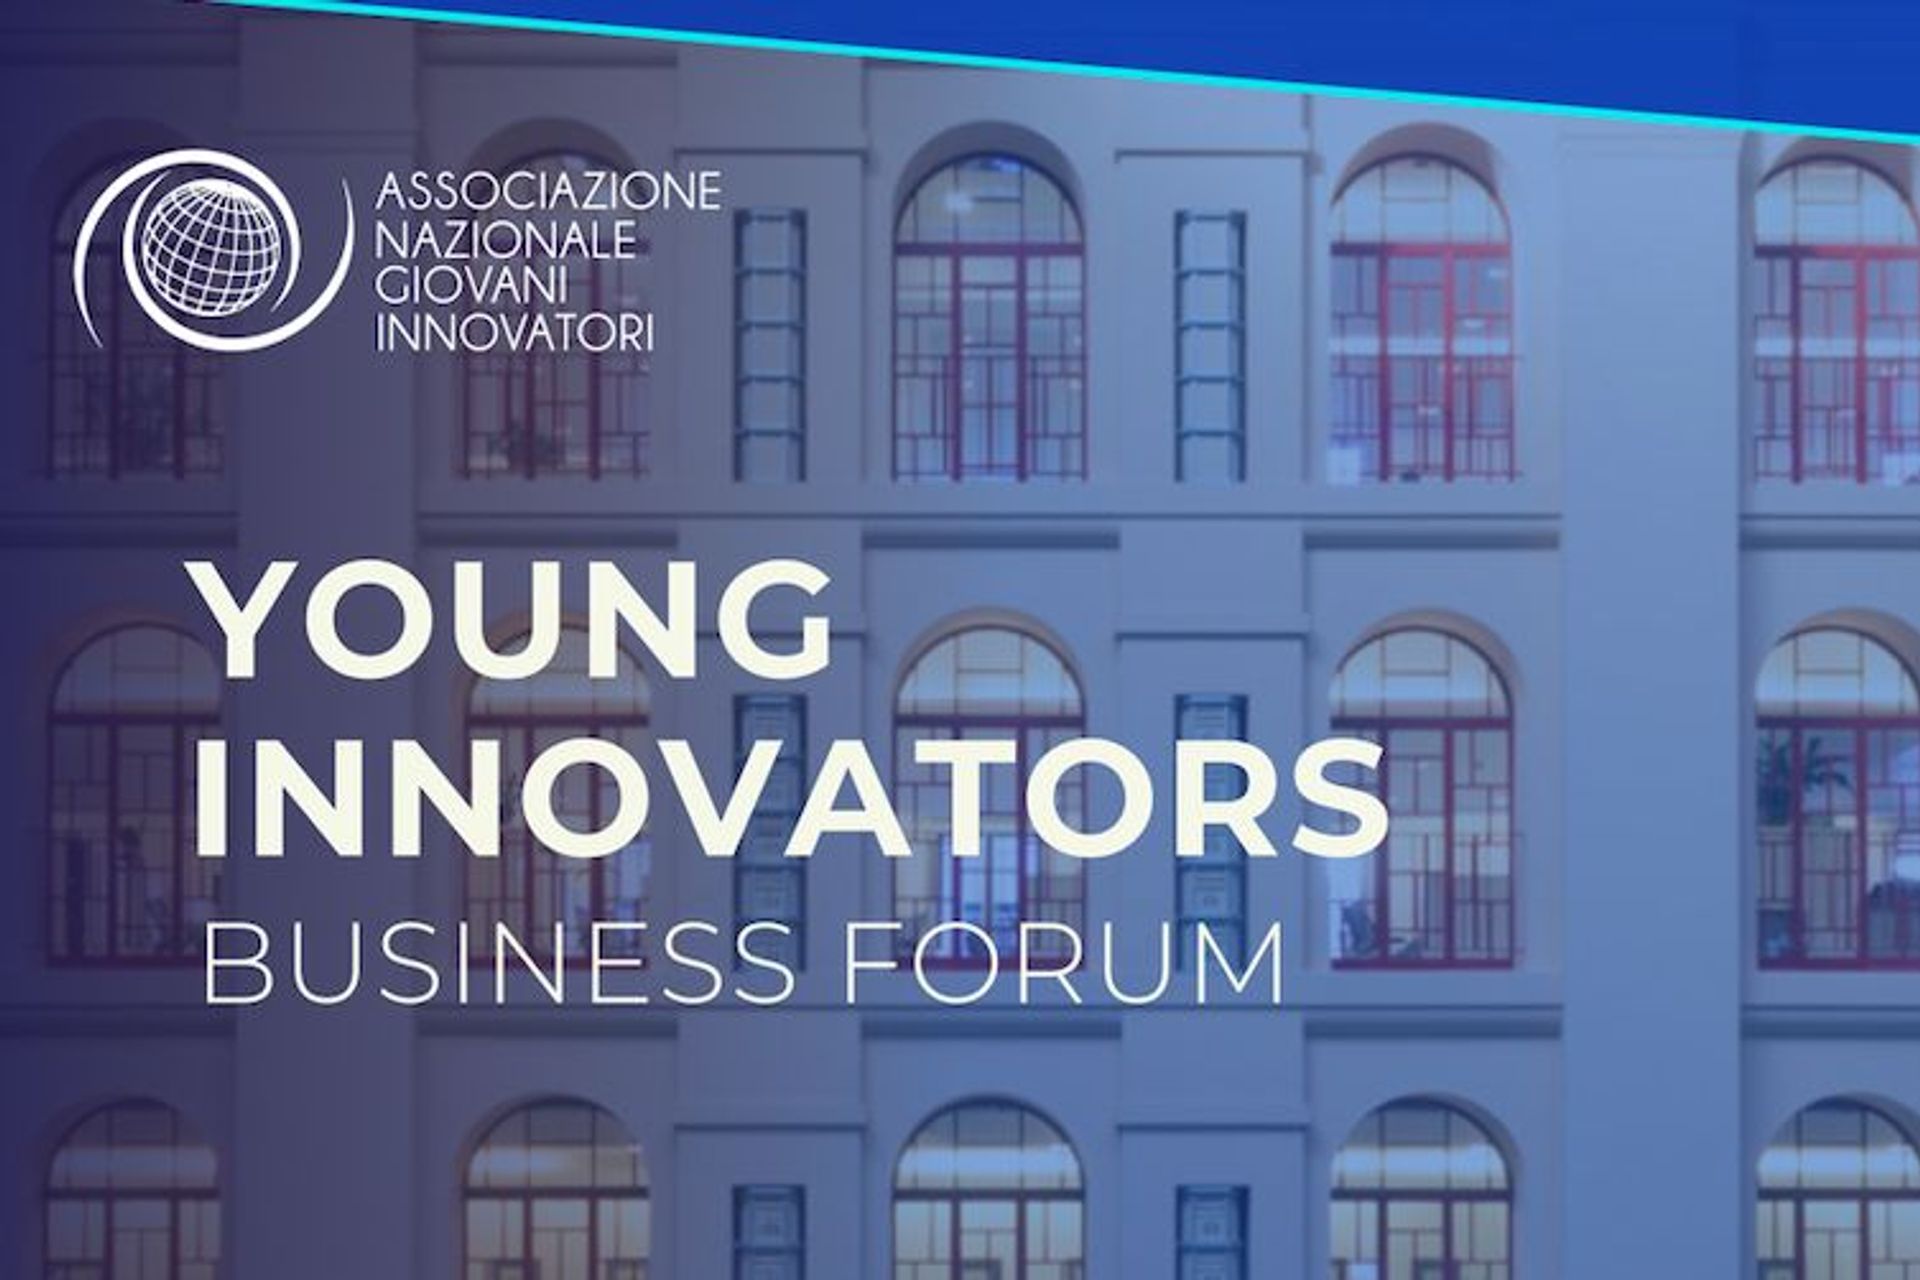 La locandina dello “Young Innovators Business Forum” del 27 giugno 2022 a Milano